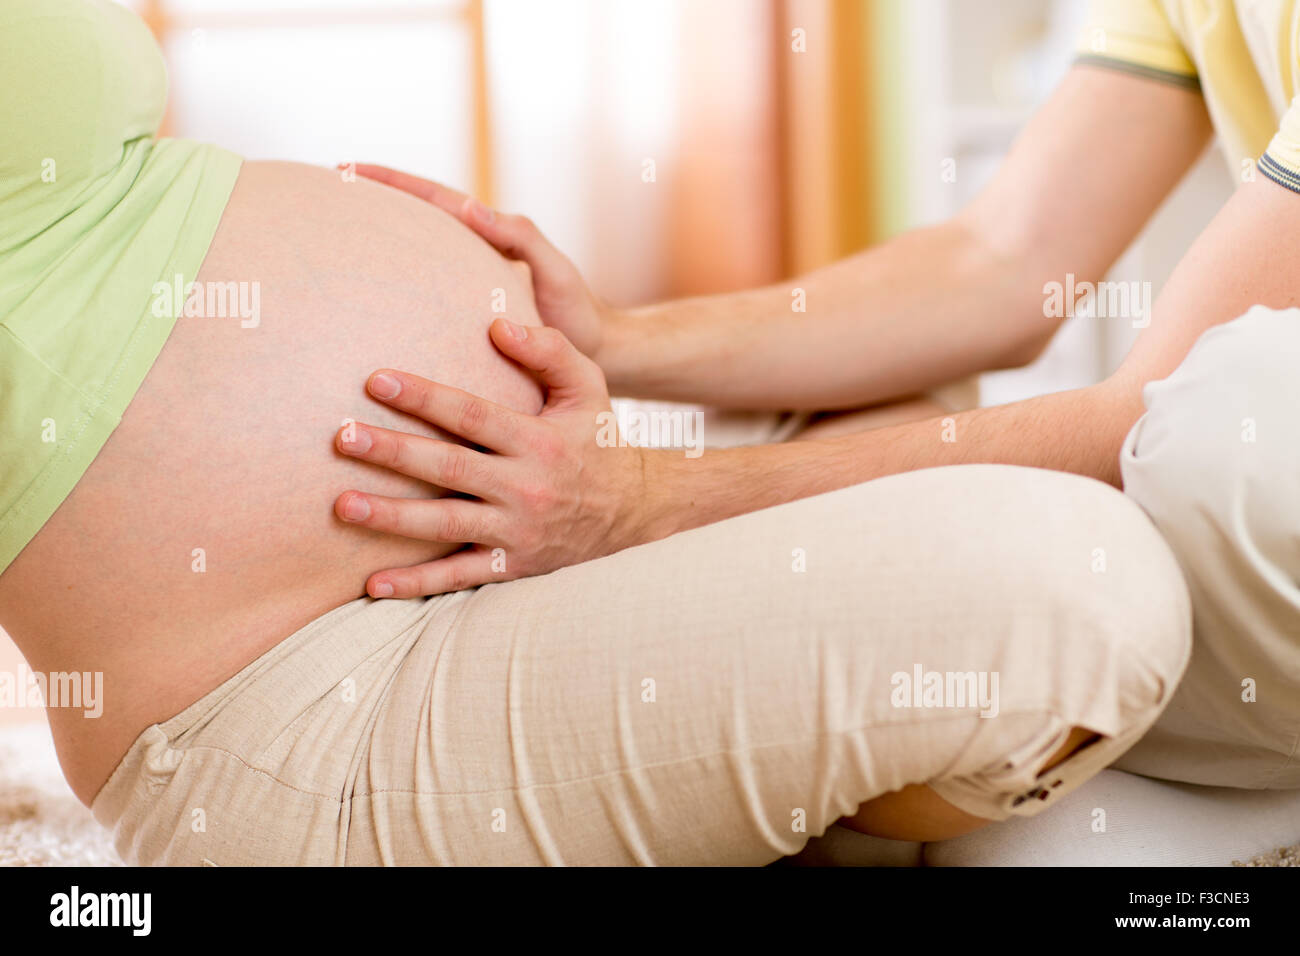 Man kommuniziert mit zukünftigen Schwiegersohn schwangere Frau Bauch zu berühren Stockfoto